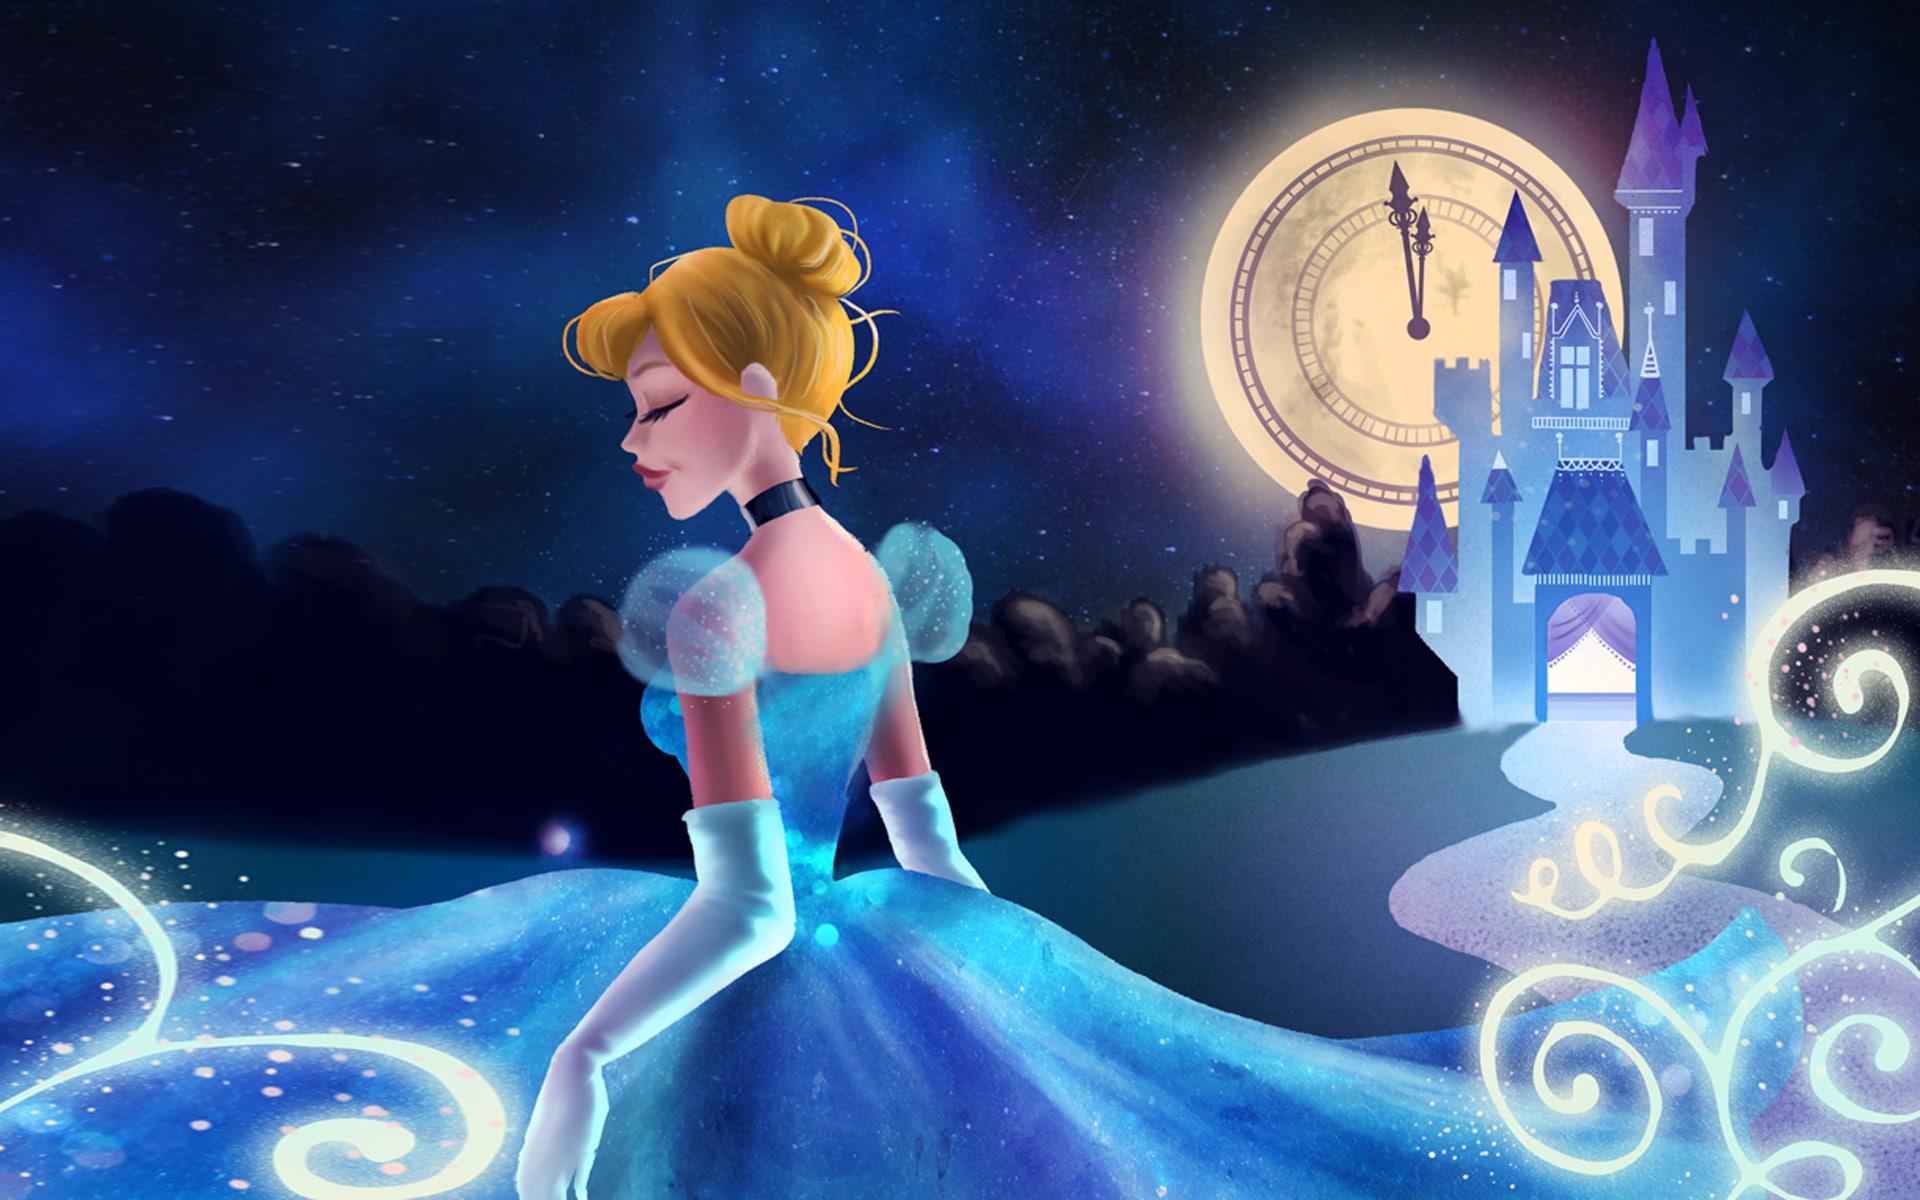 HD wallpaper: Cartoon Cinderella And Cartoon Cinderella And Prince